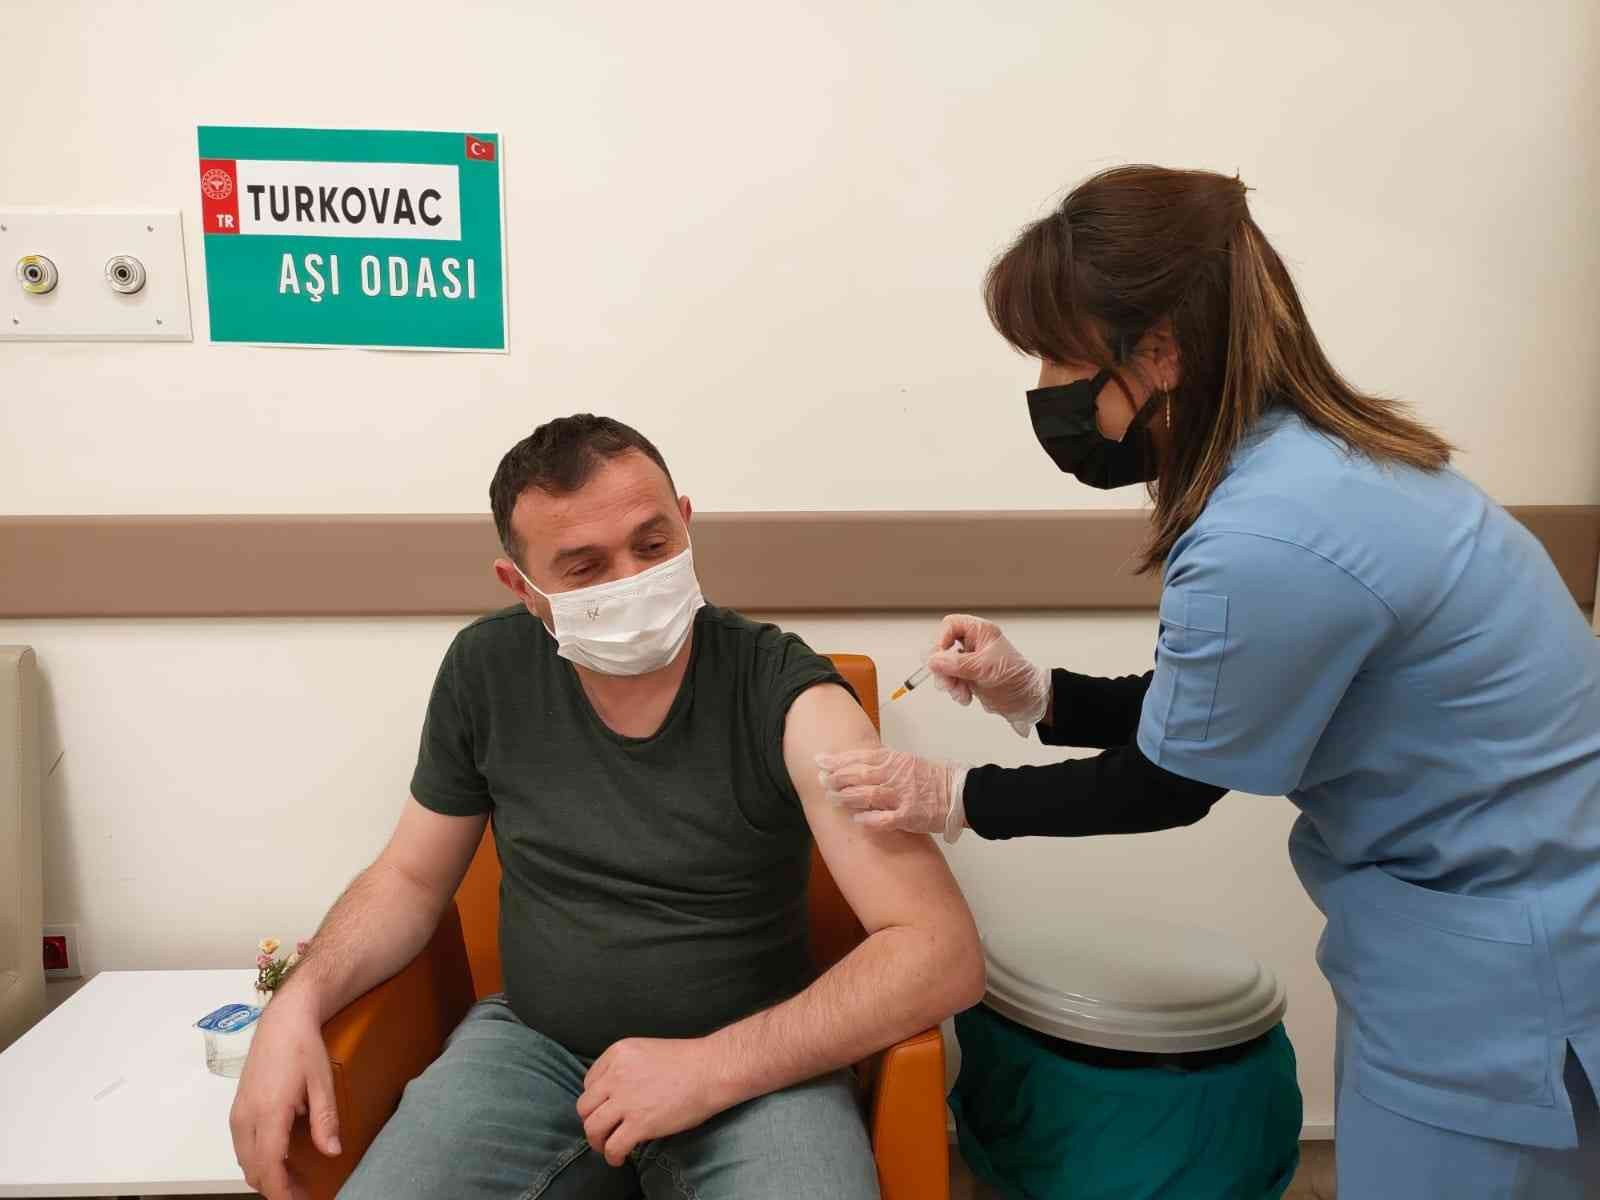 Giresun’da 2 bin 500 doz TURKOVAC aşısı uygulandı #giresun